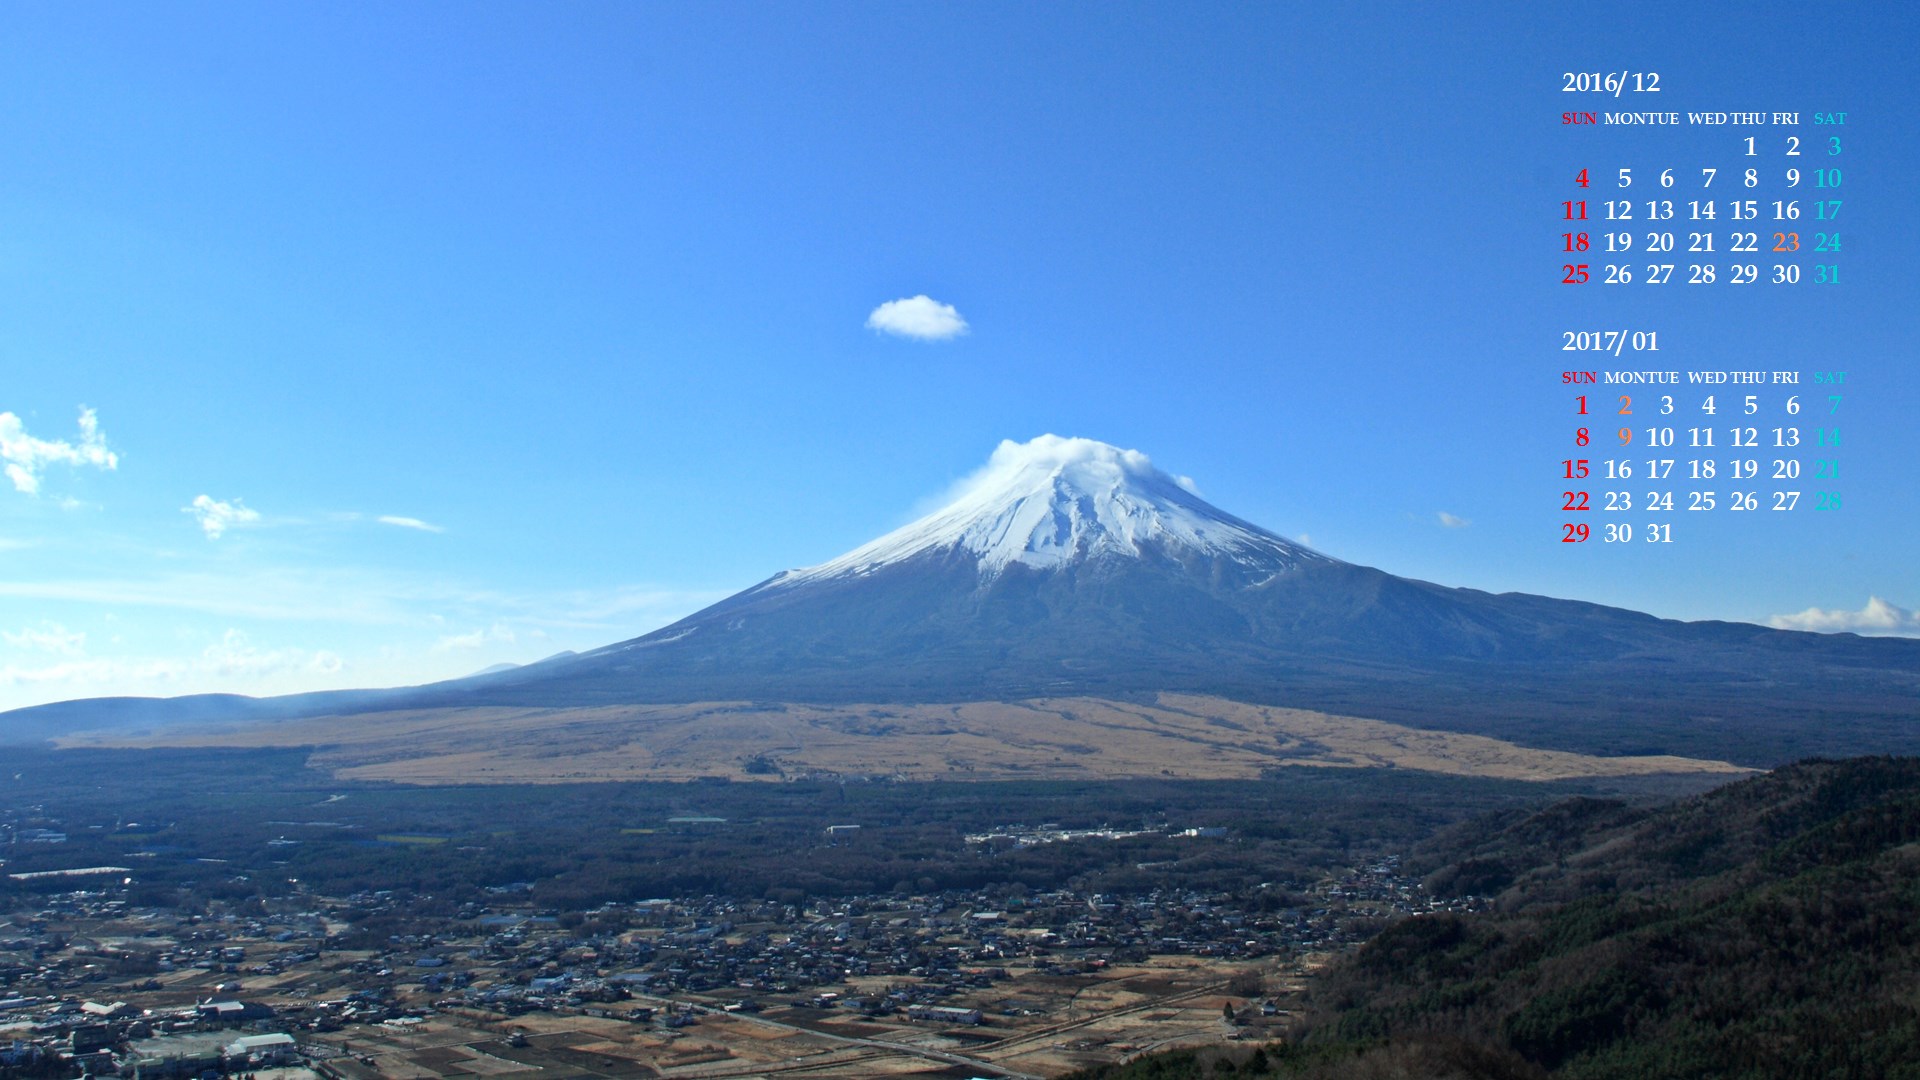 忍野村と富士山 カレンダー壁紙館 昴 無料ワイド